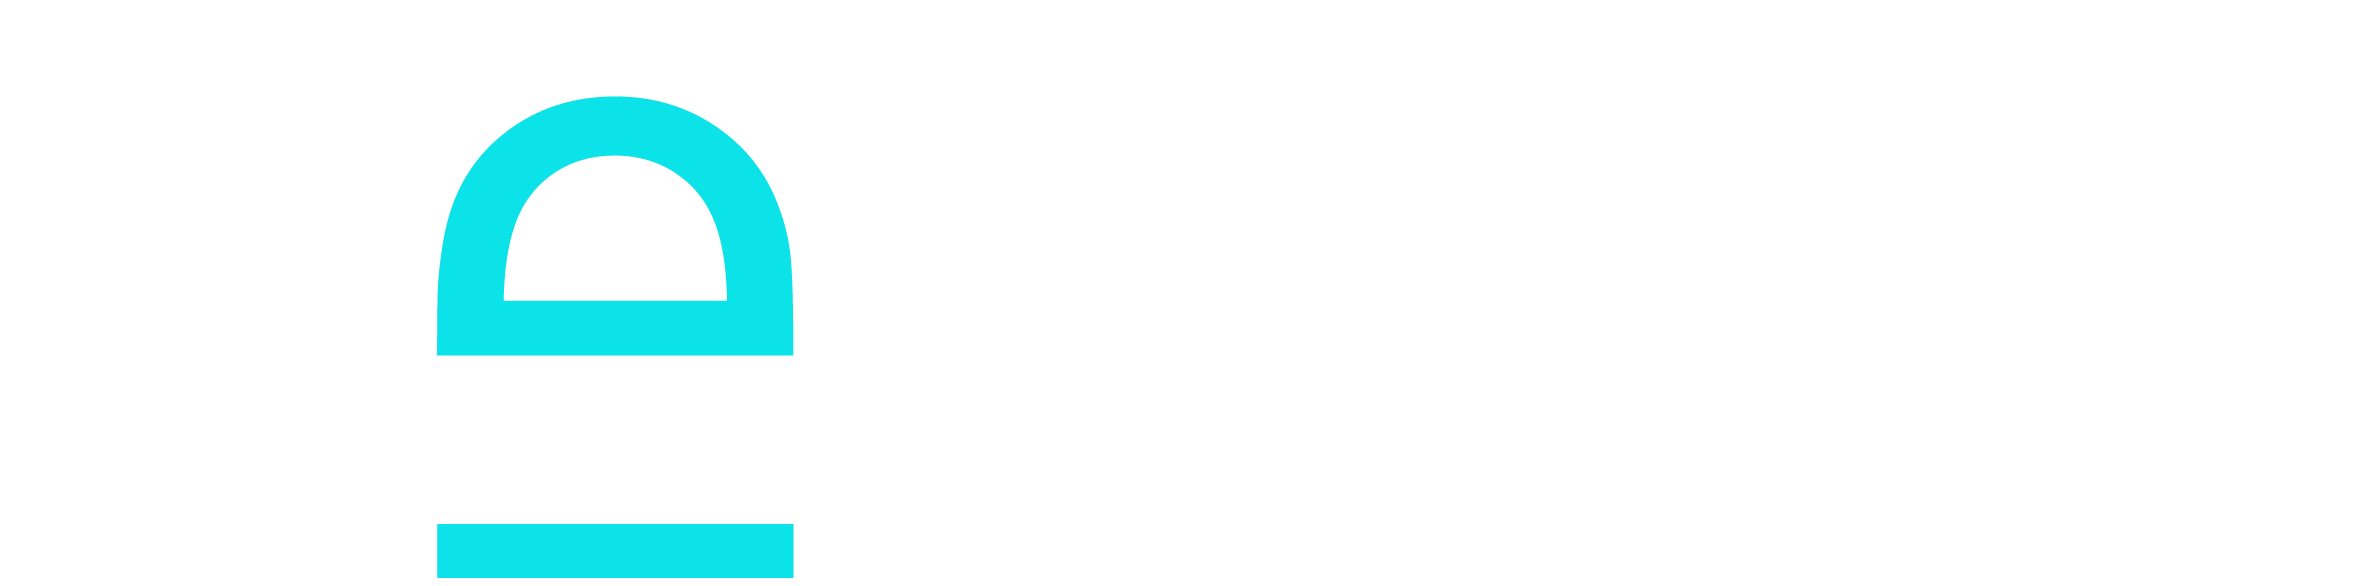 logotipo vevoat tecnologia